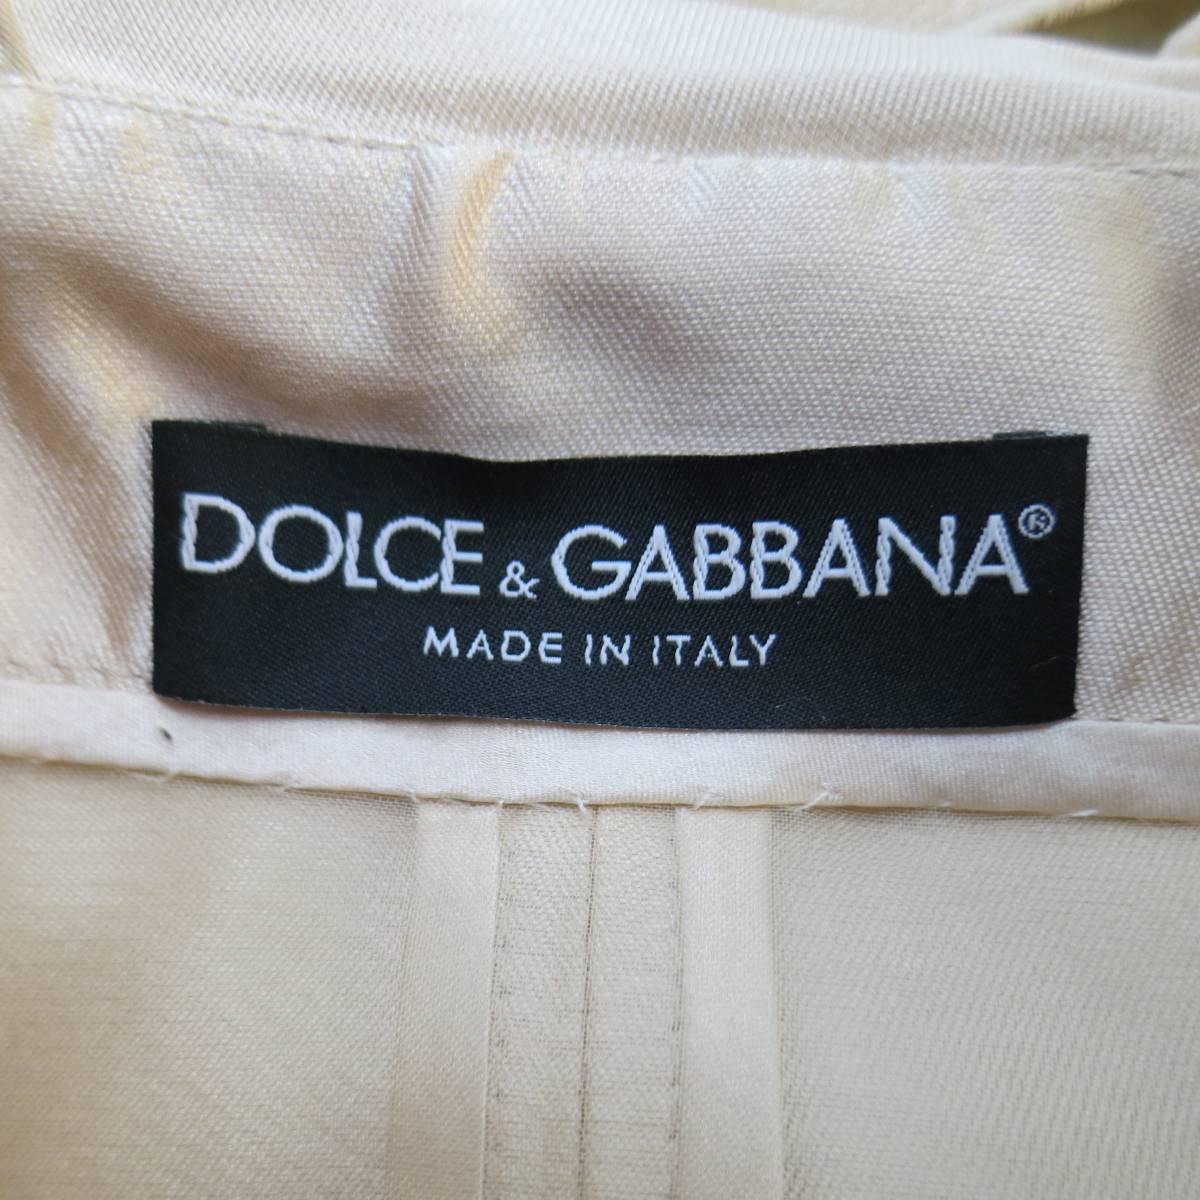 DOLCE & GABBANA Coat Dress - Size 6 Blush Silk Satin Floral Lace 2